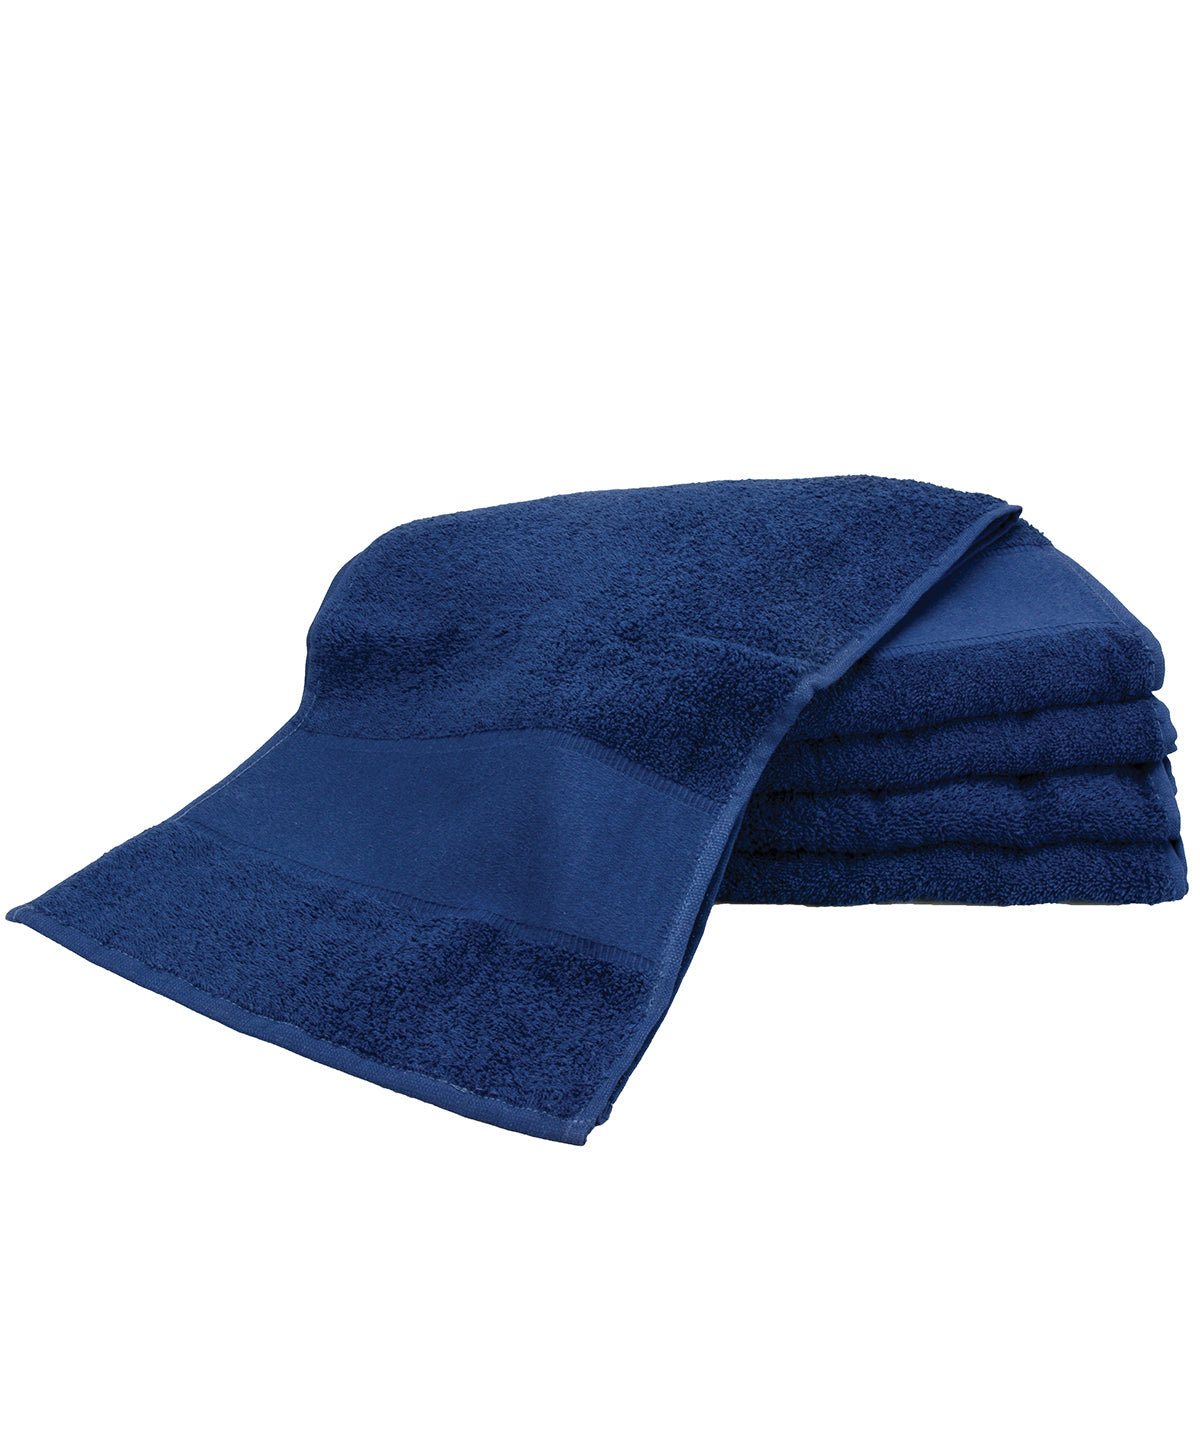 Personalised Towels - Navy A&R Towels ARTG® PRINT-Me® sport towel